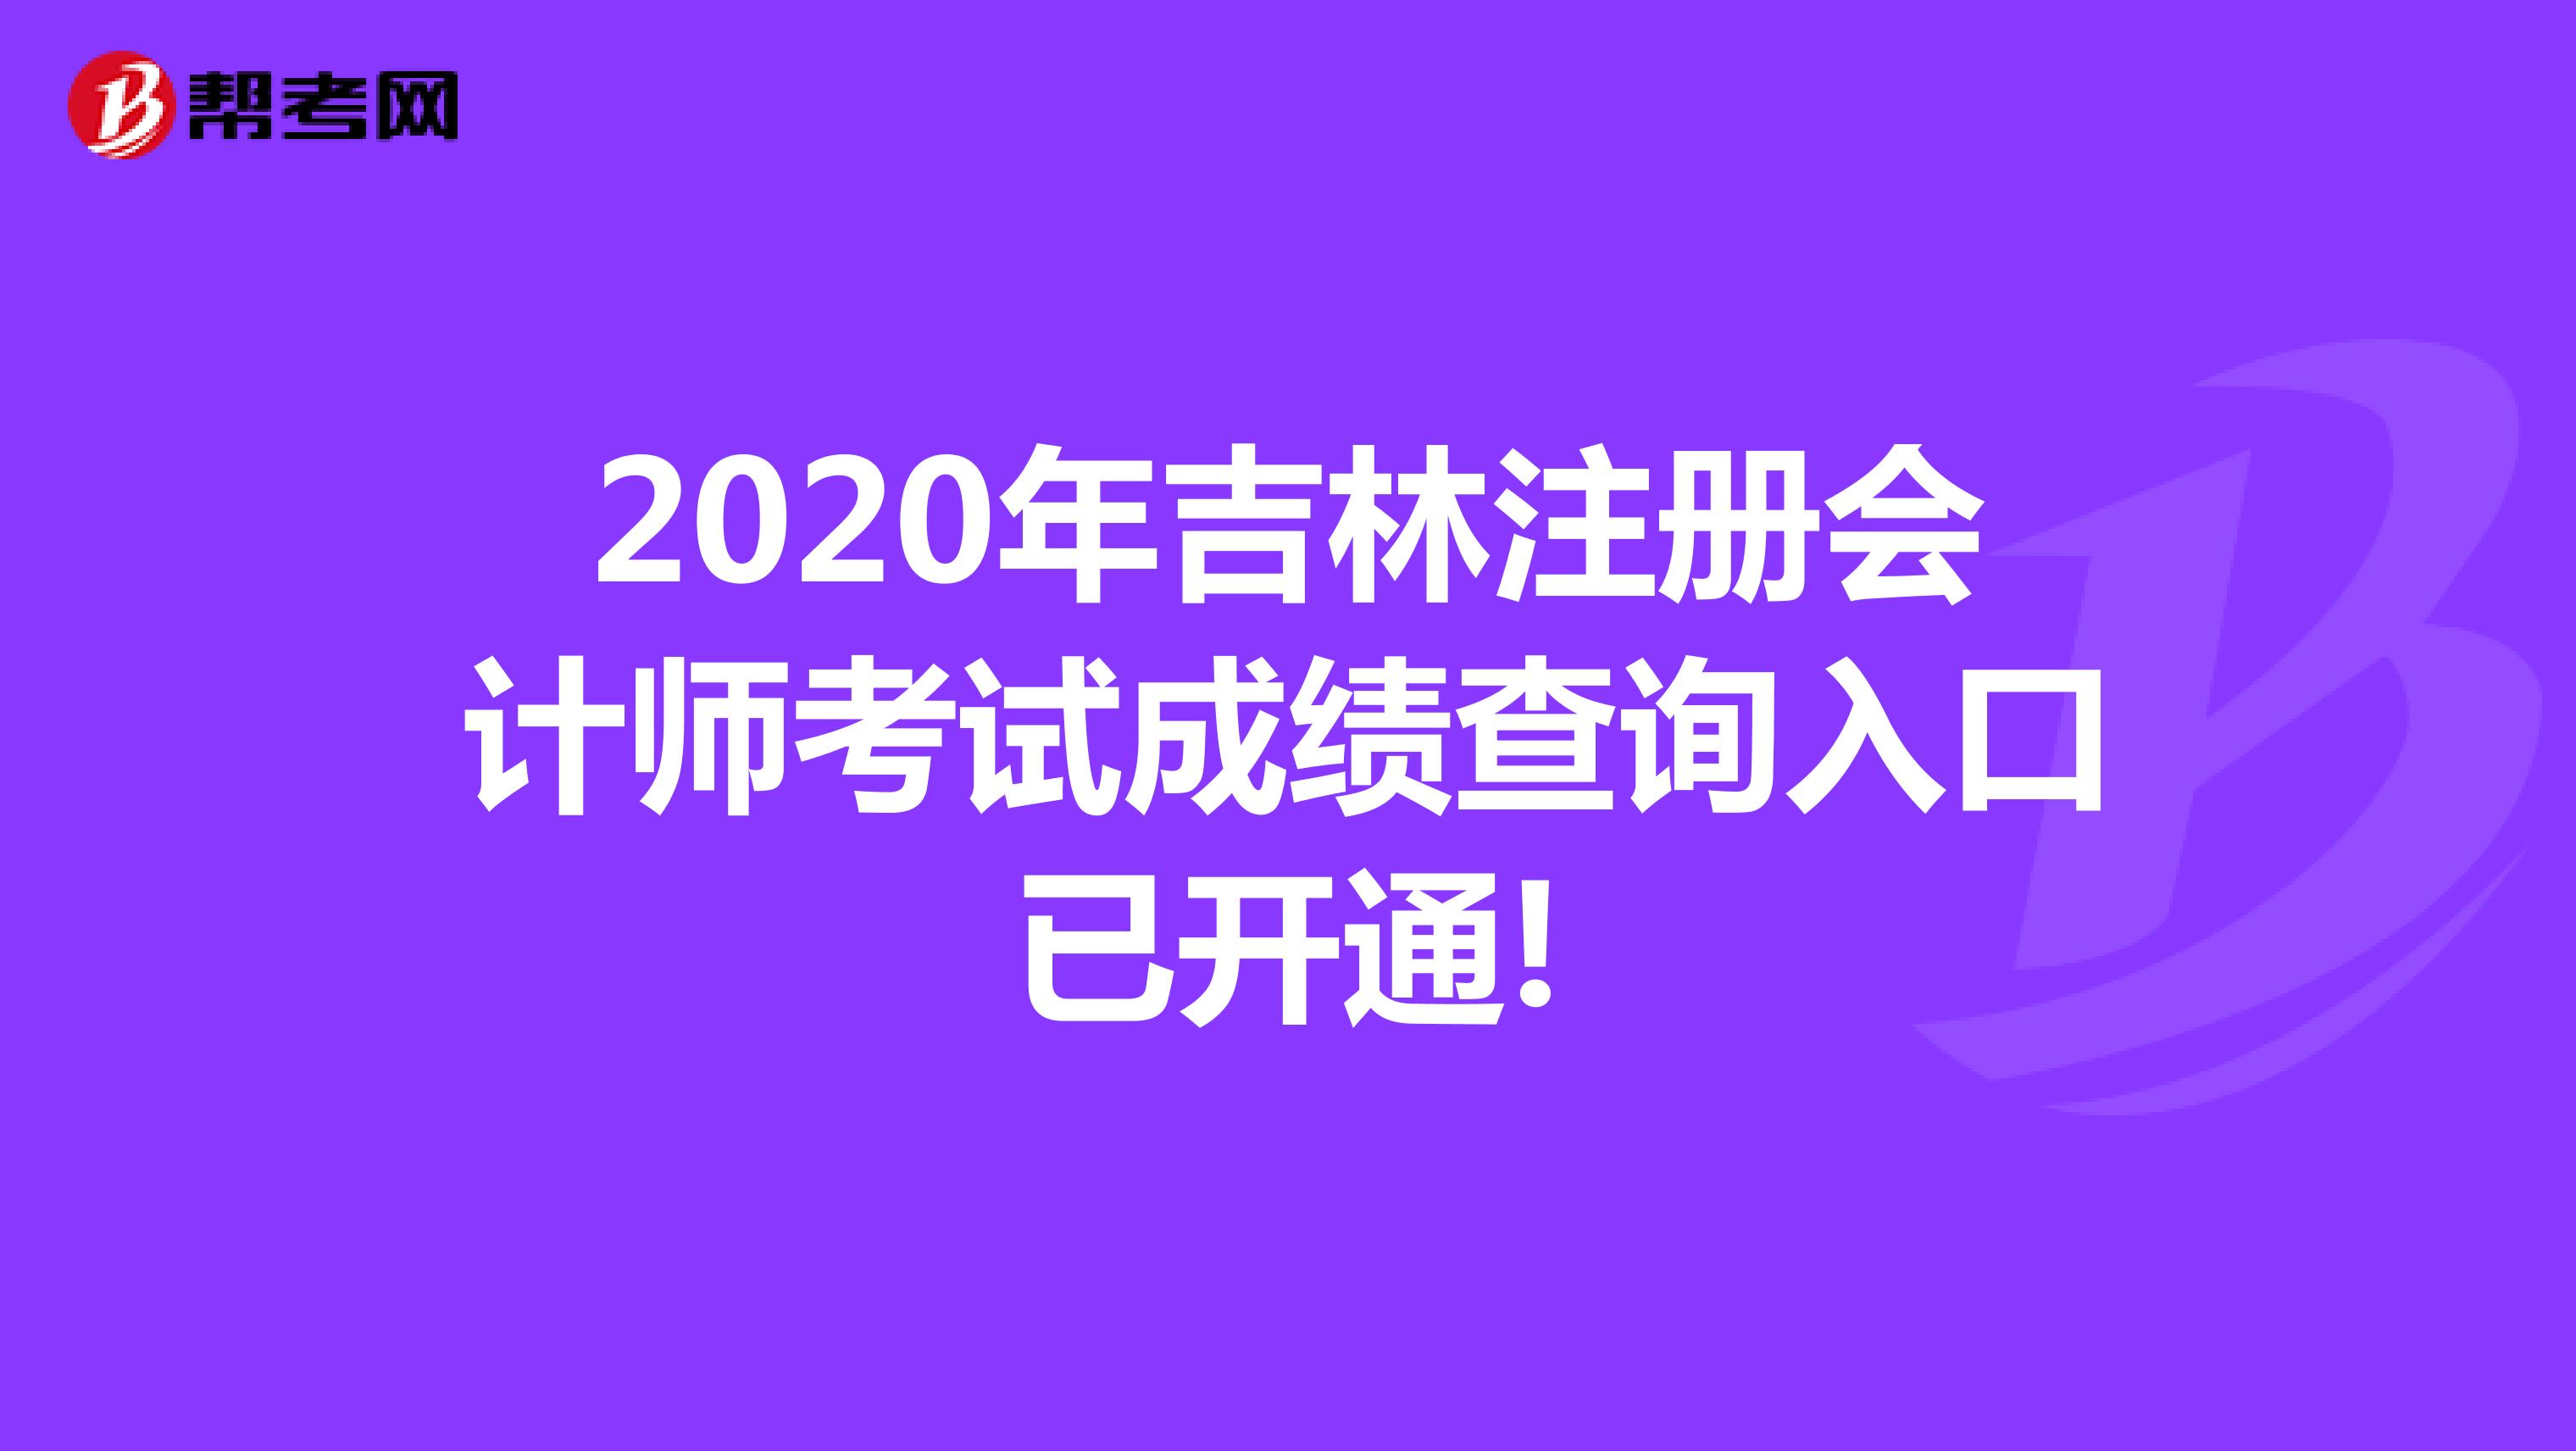 2020年吉林注册会计师考试成绩查询入口已开通!